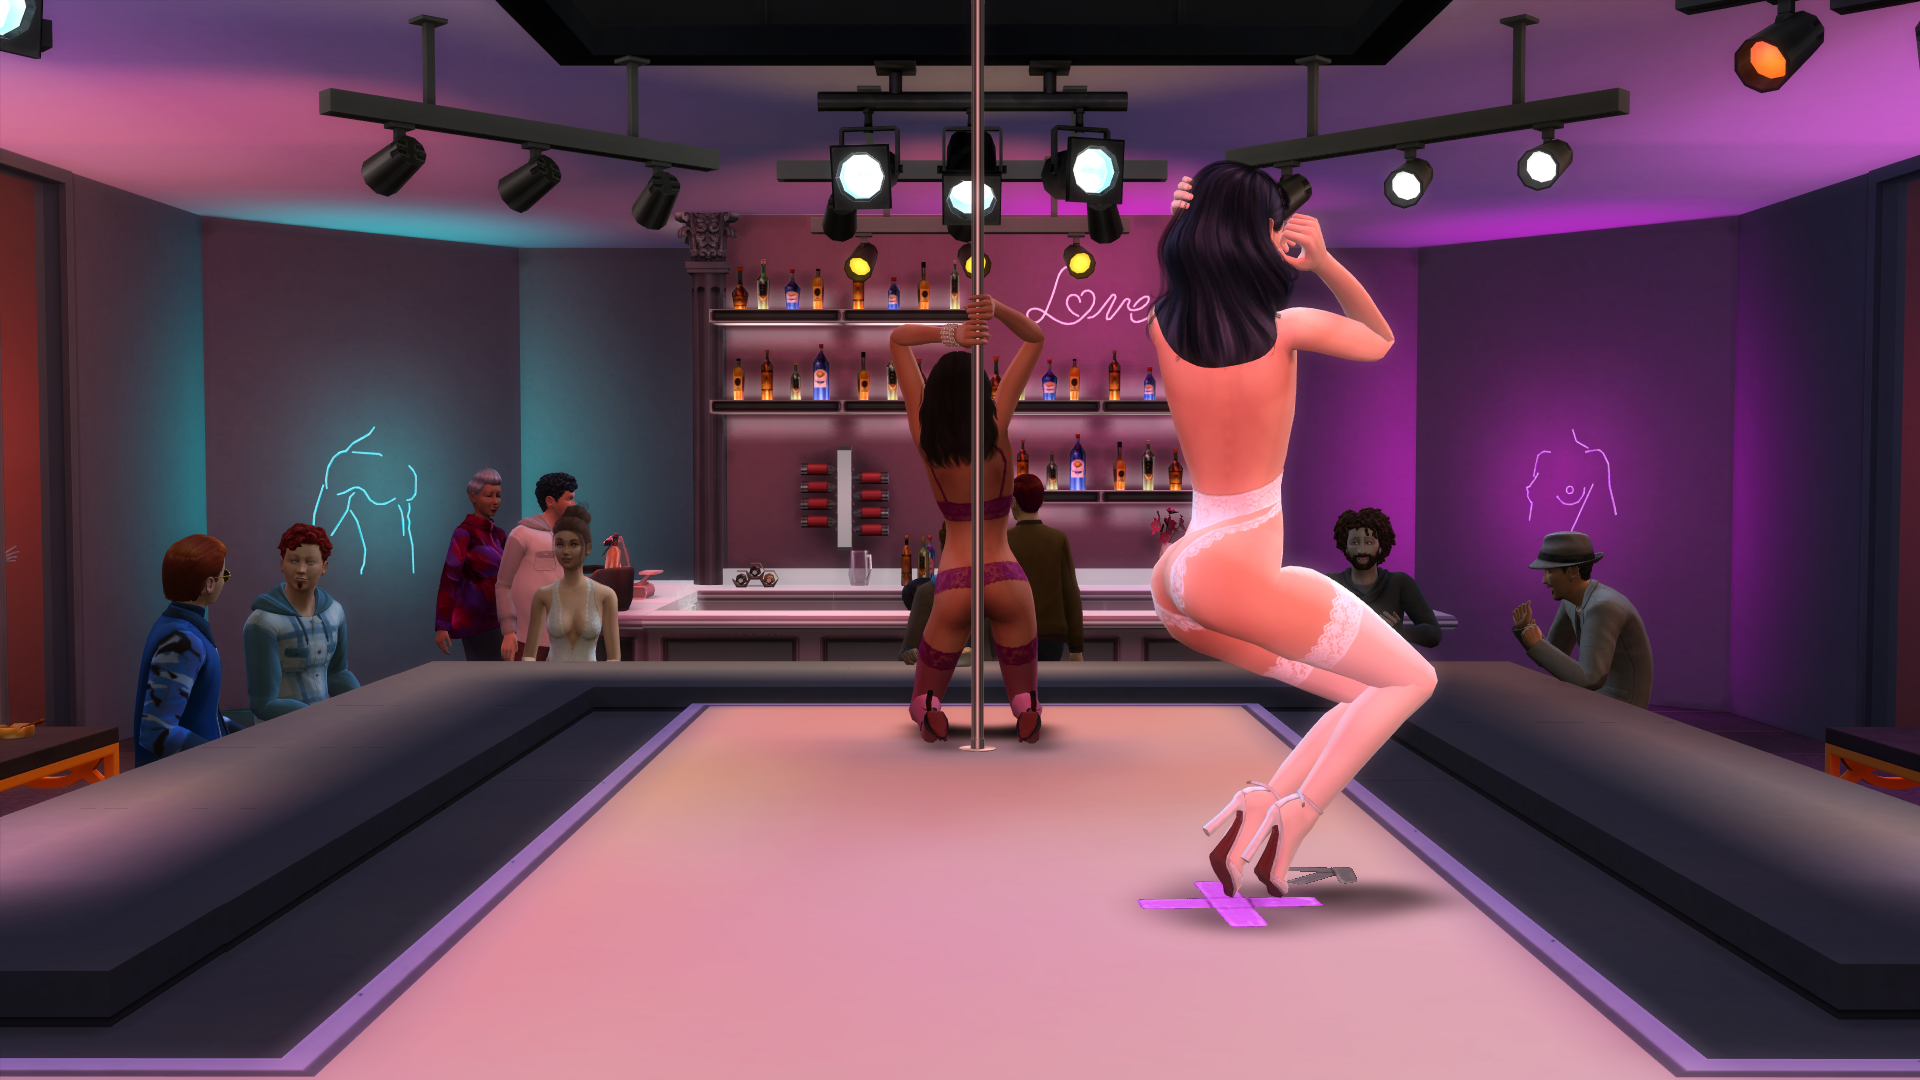 Strip club sims 4 mod